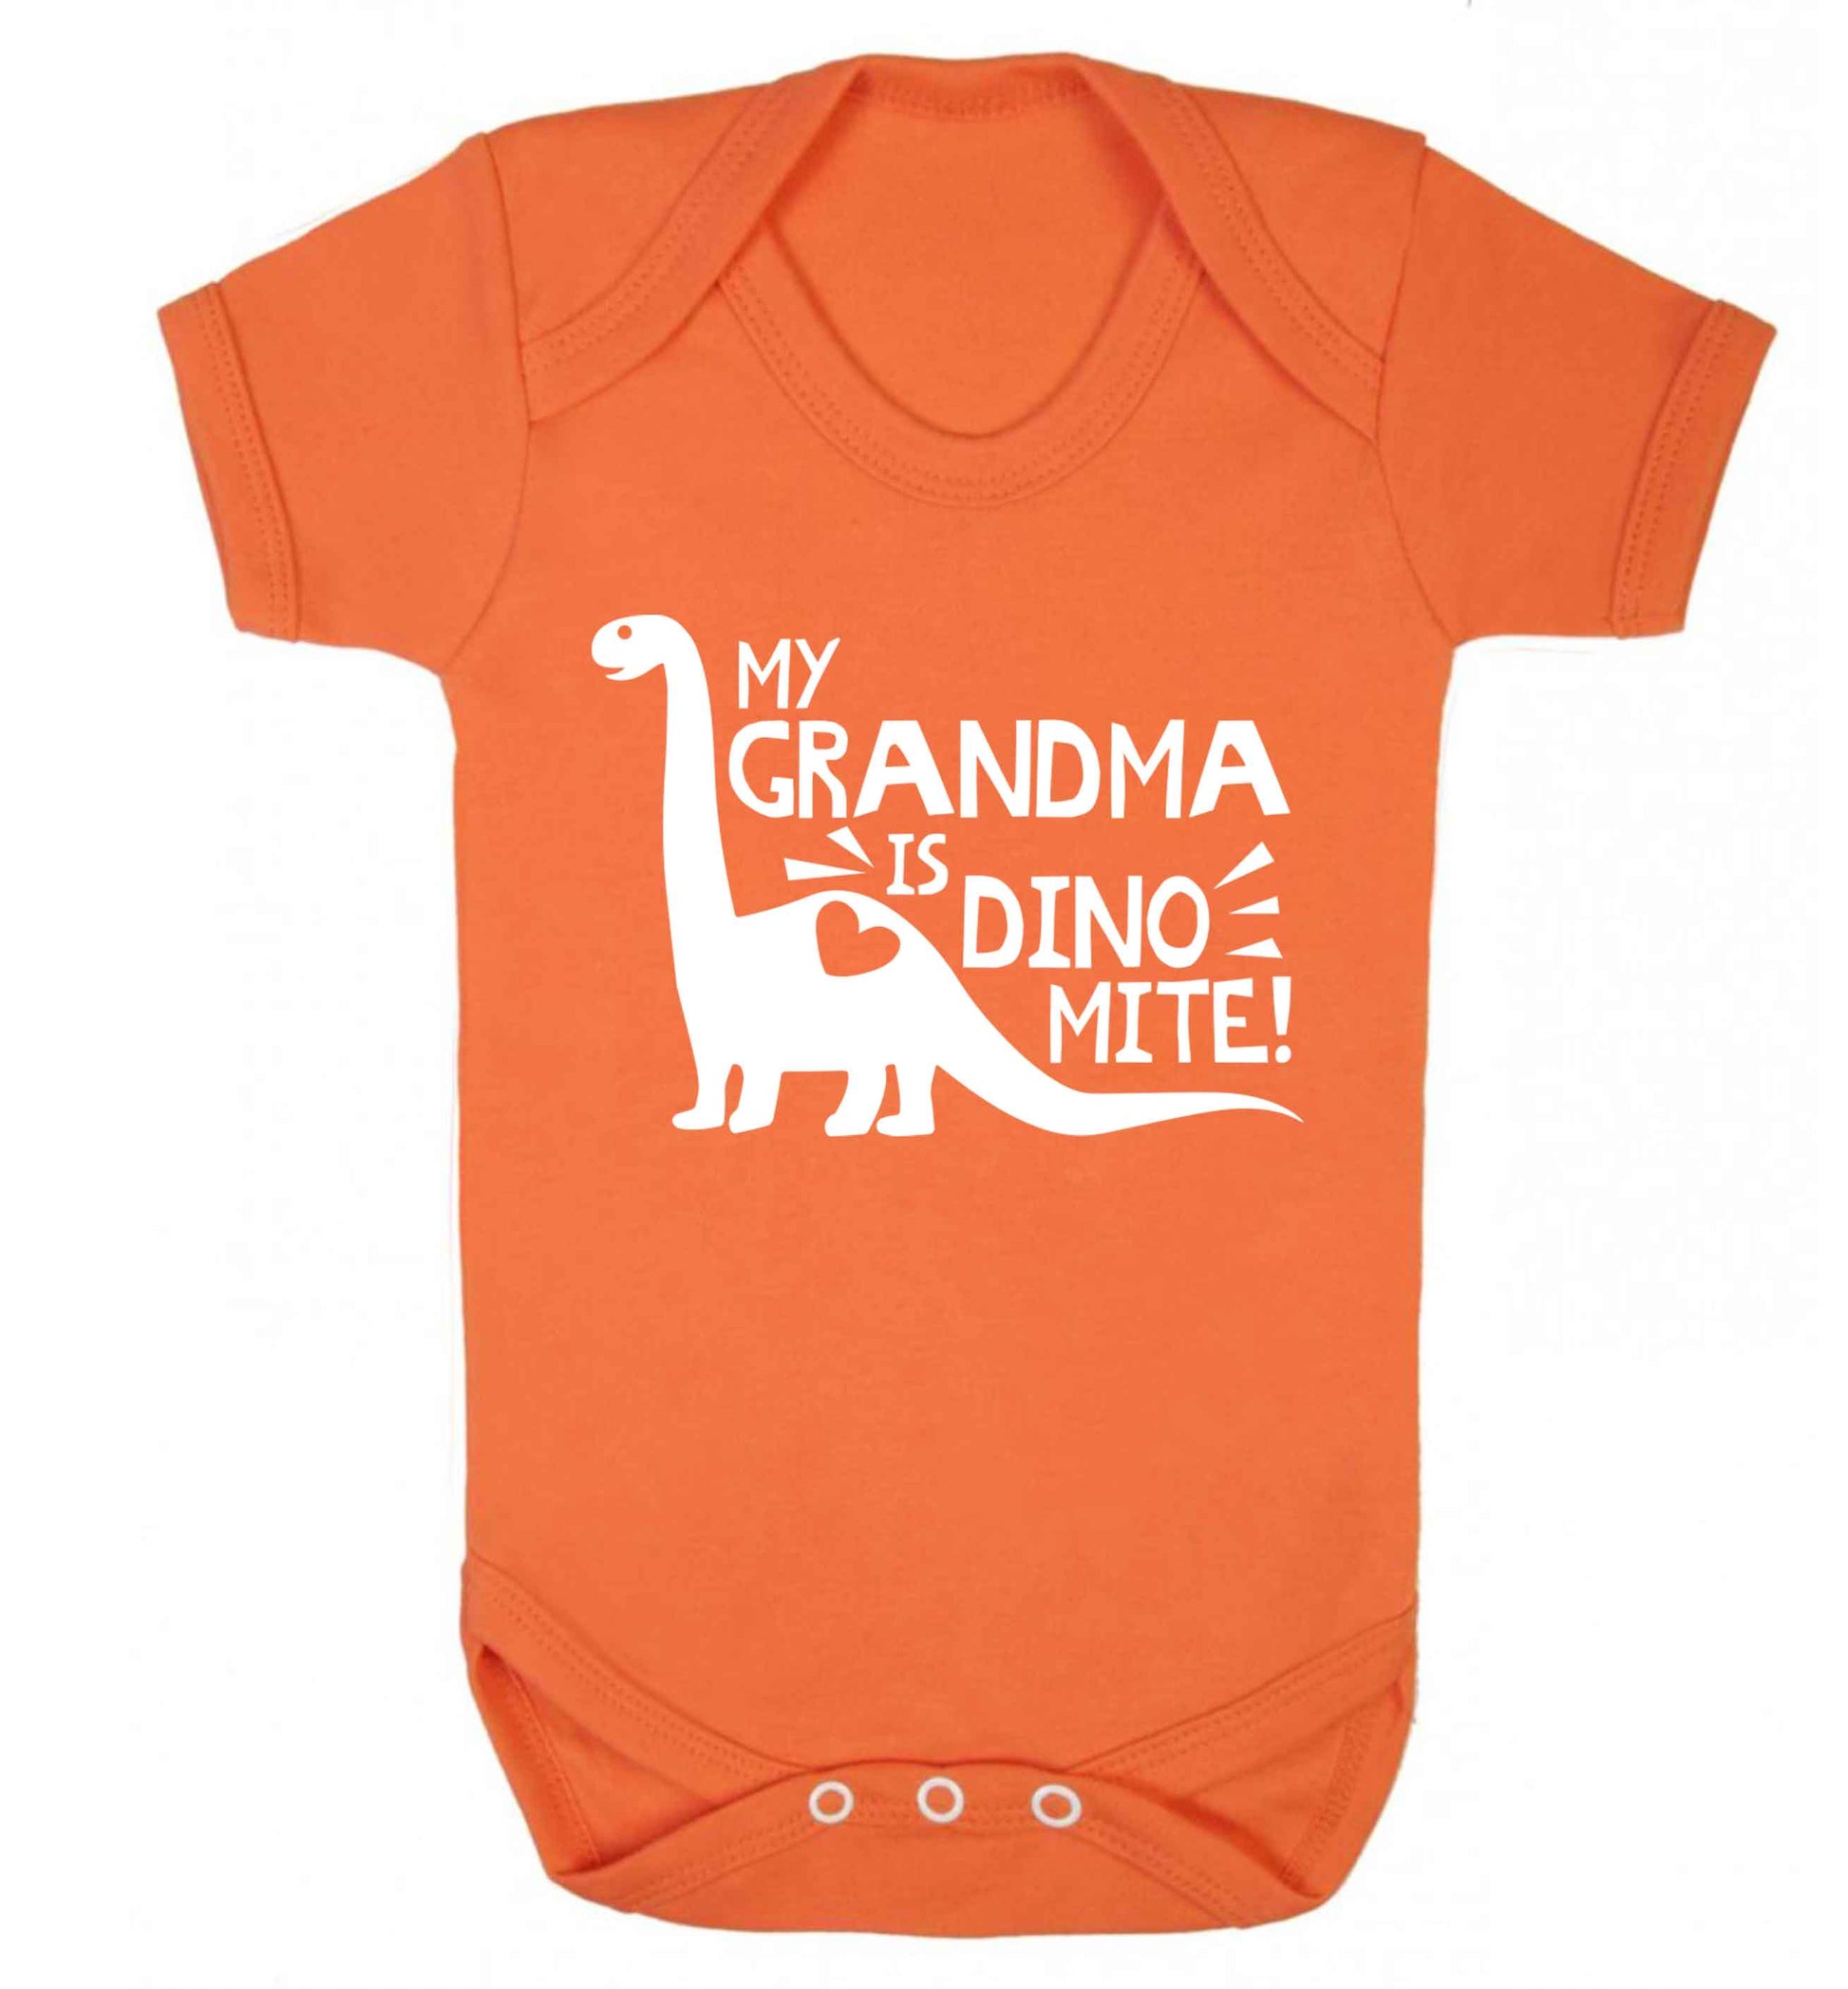 My grandma is dinomite! Baby Vest orange 18-24 months